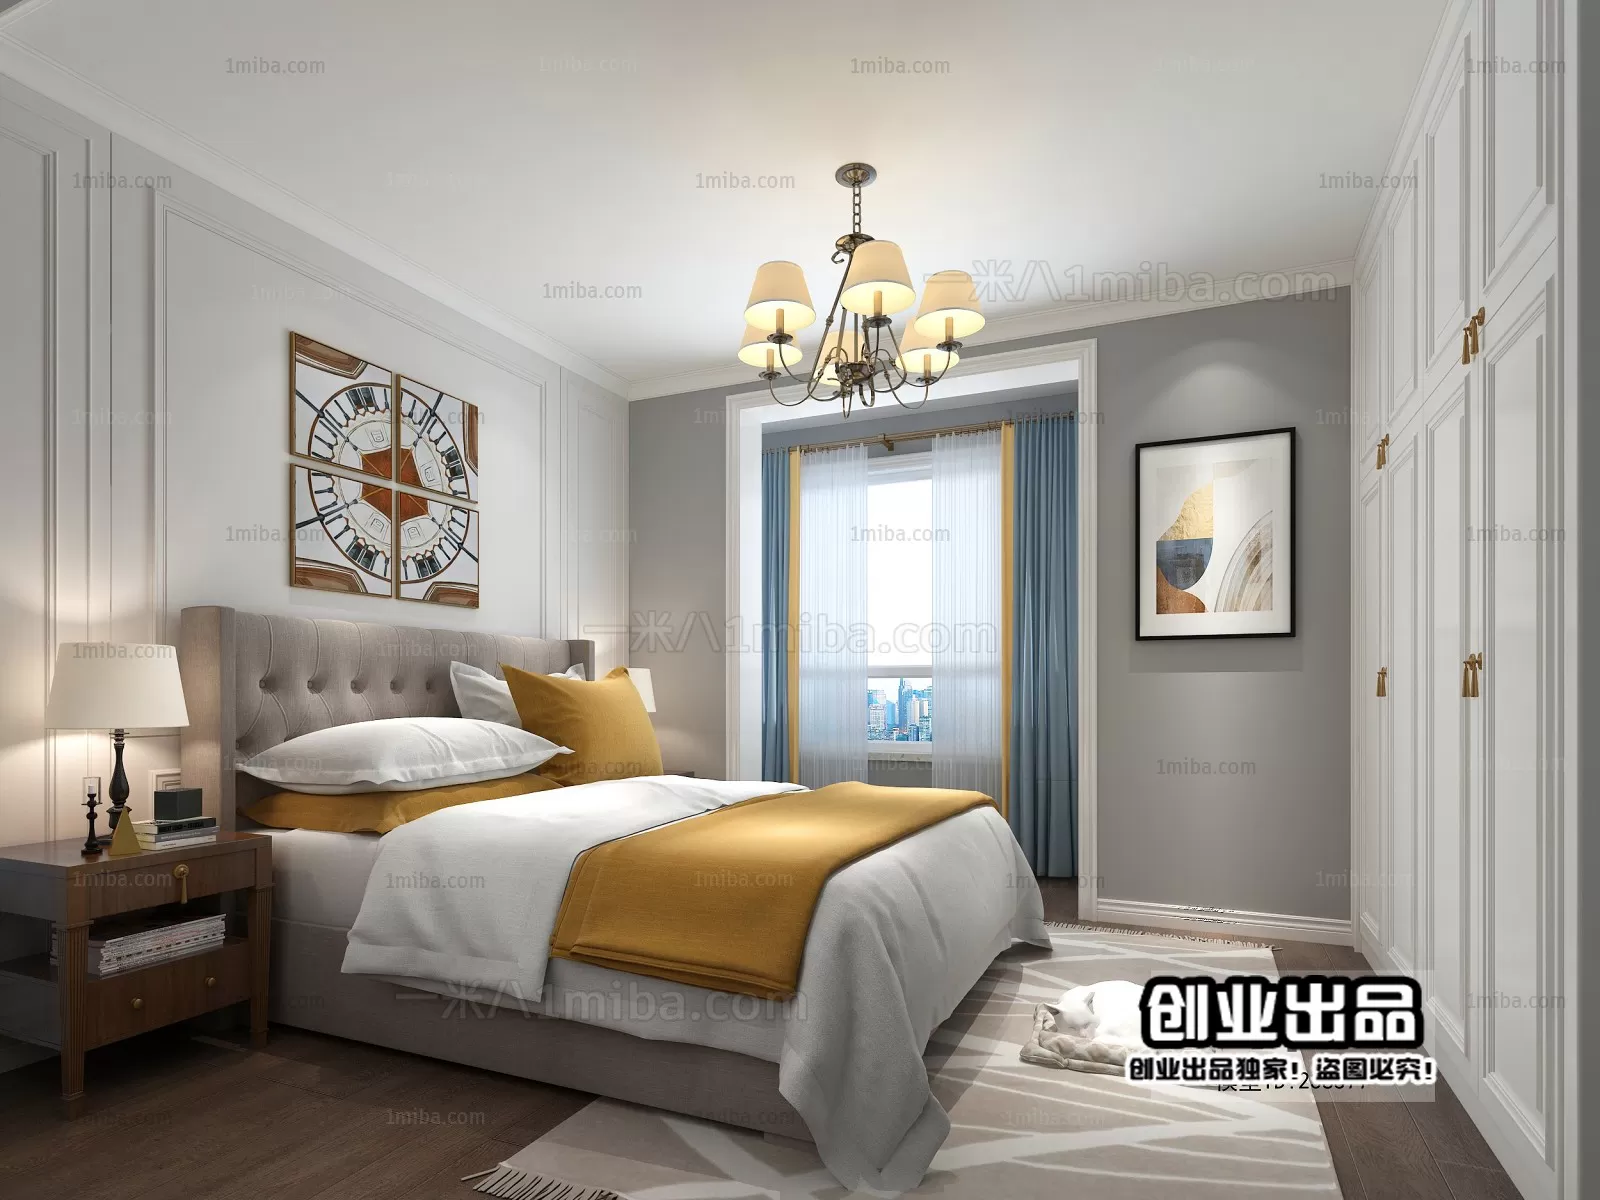 Bedroom – European Design – 3D66 – 3D Scenes – 049